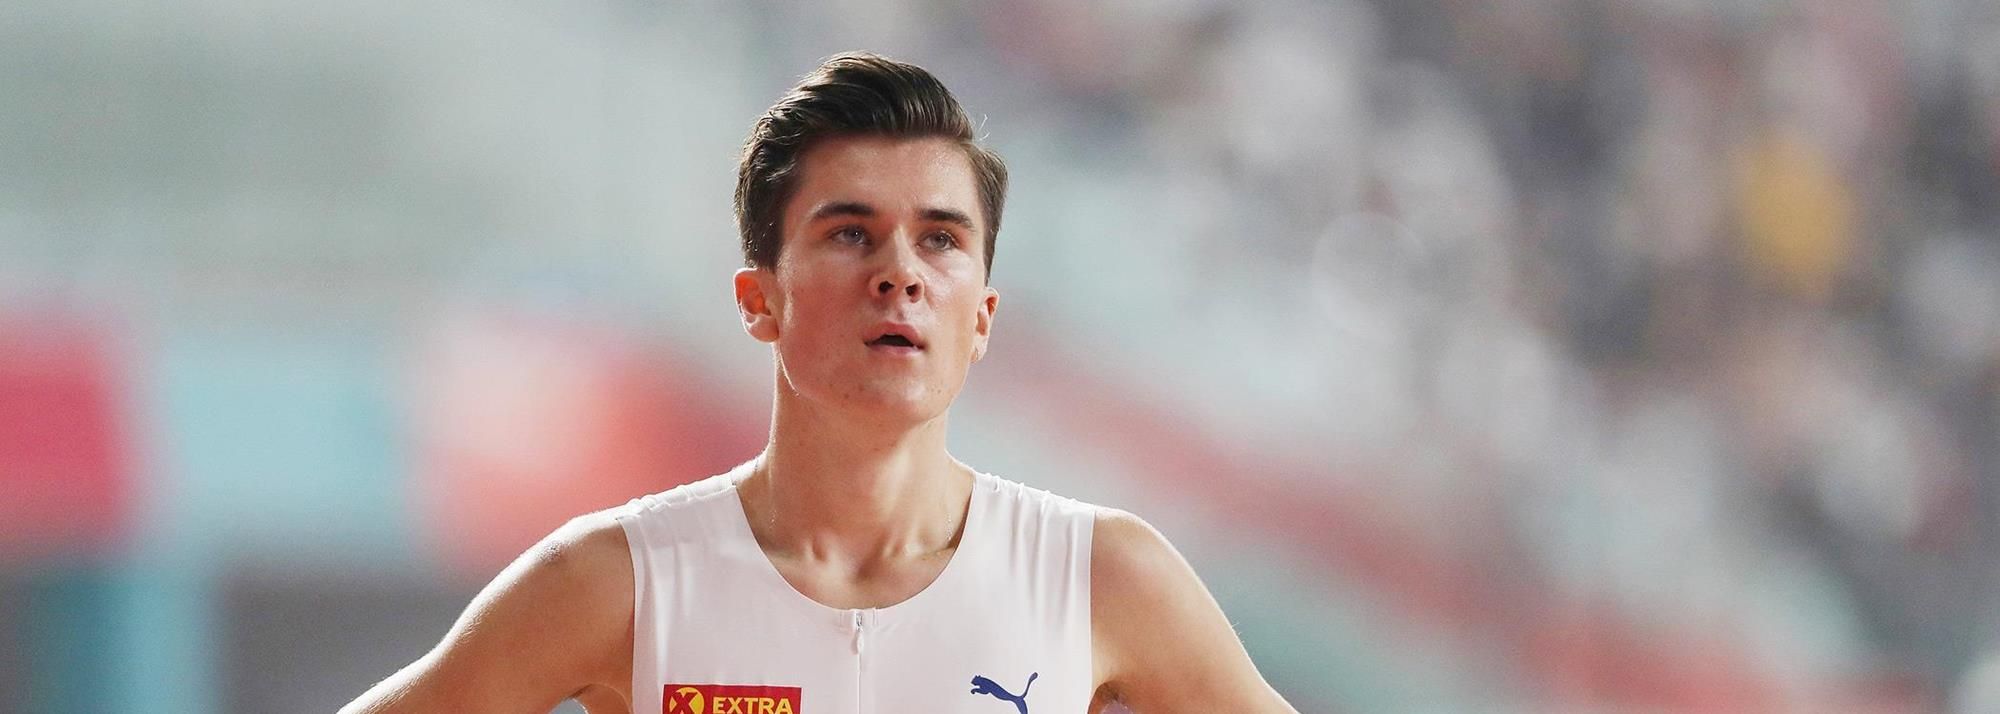 Jakob INGEBRIGTSEN | Profile | World Athletics